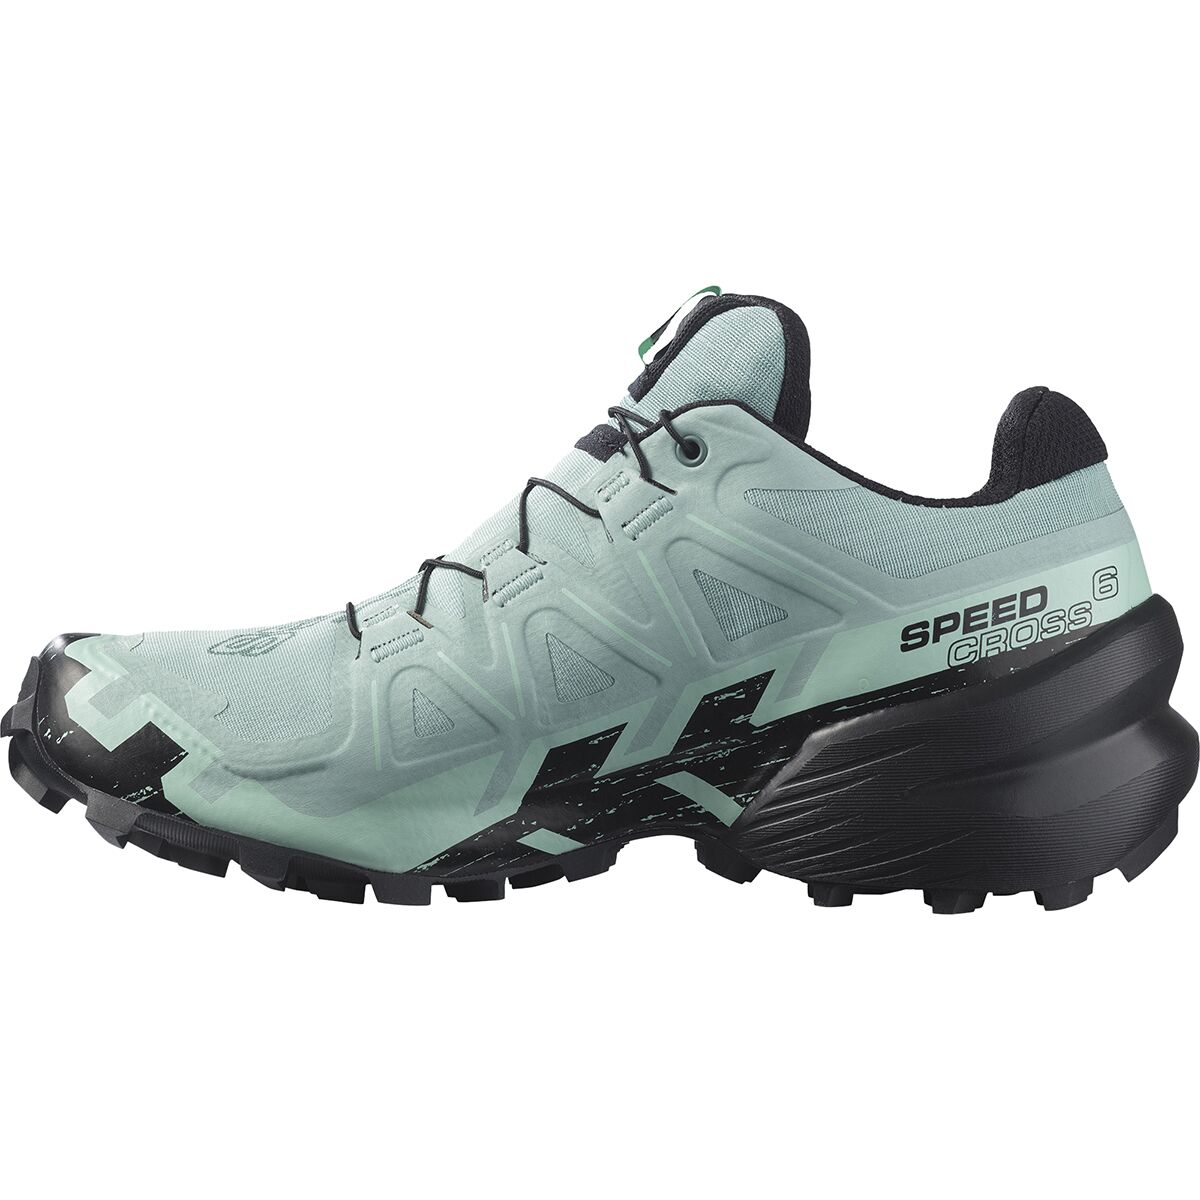 Salomon Speedcross 6 GTX Trail Running Shoe - Women's - Footwear